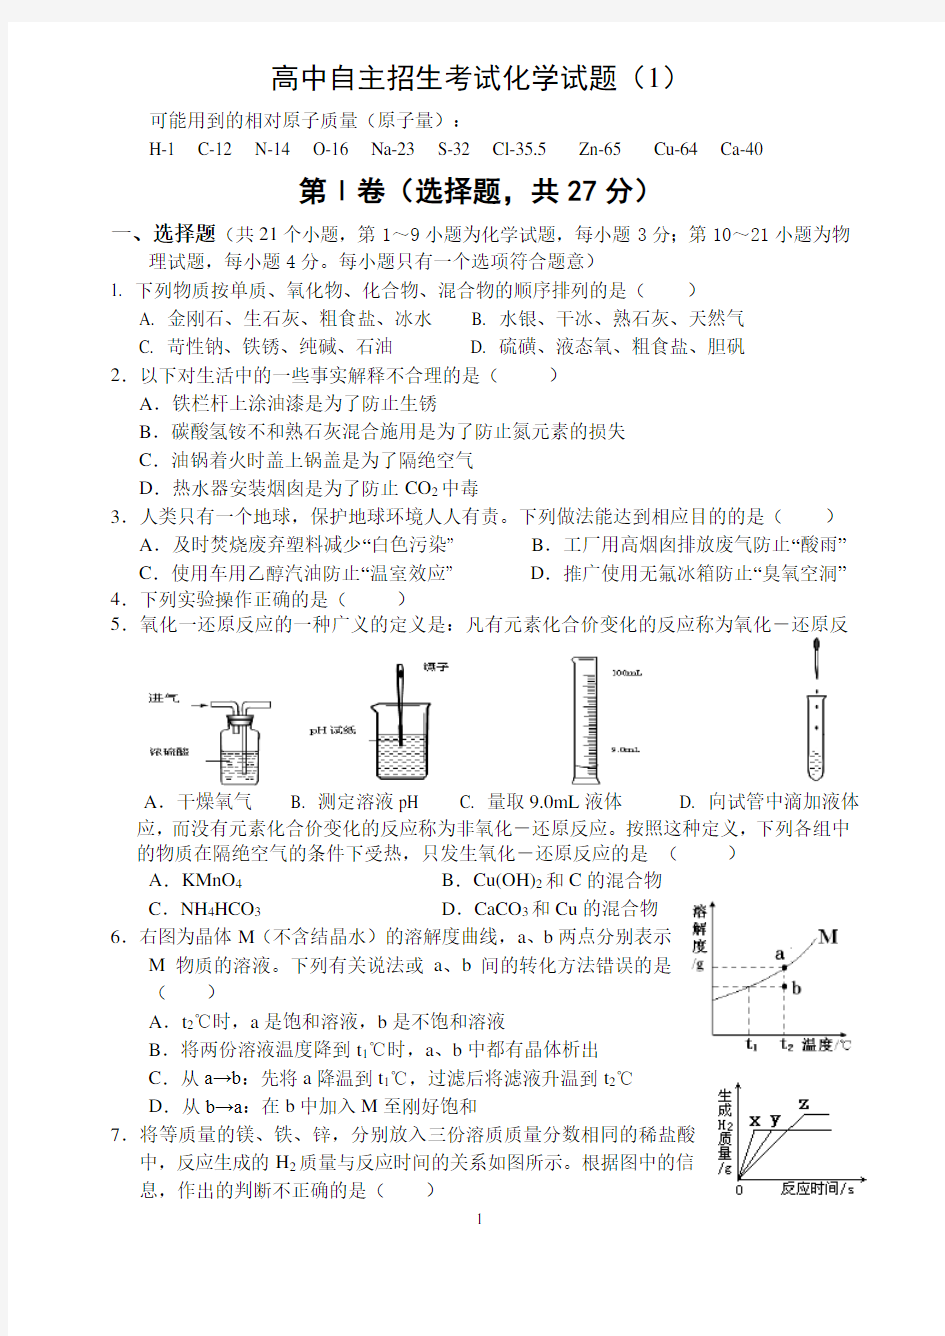 重点高中自主招生考试化学试题(1).pdf